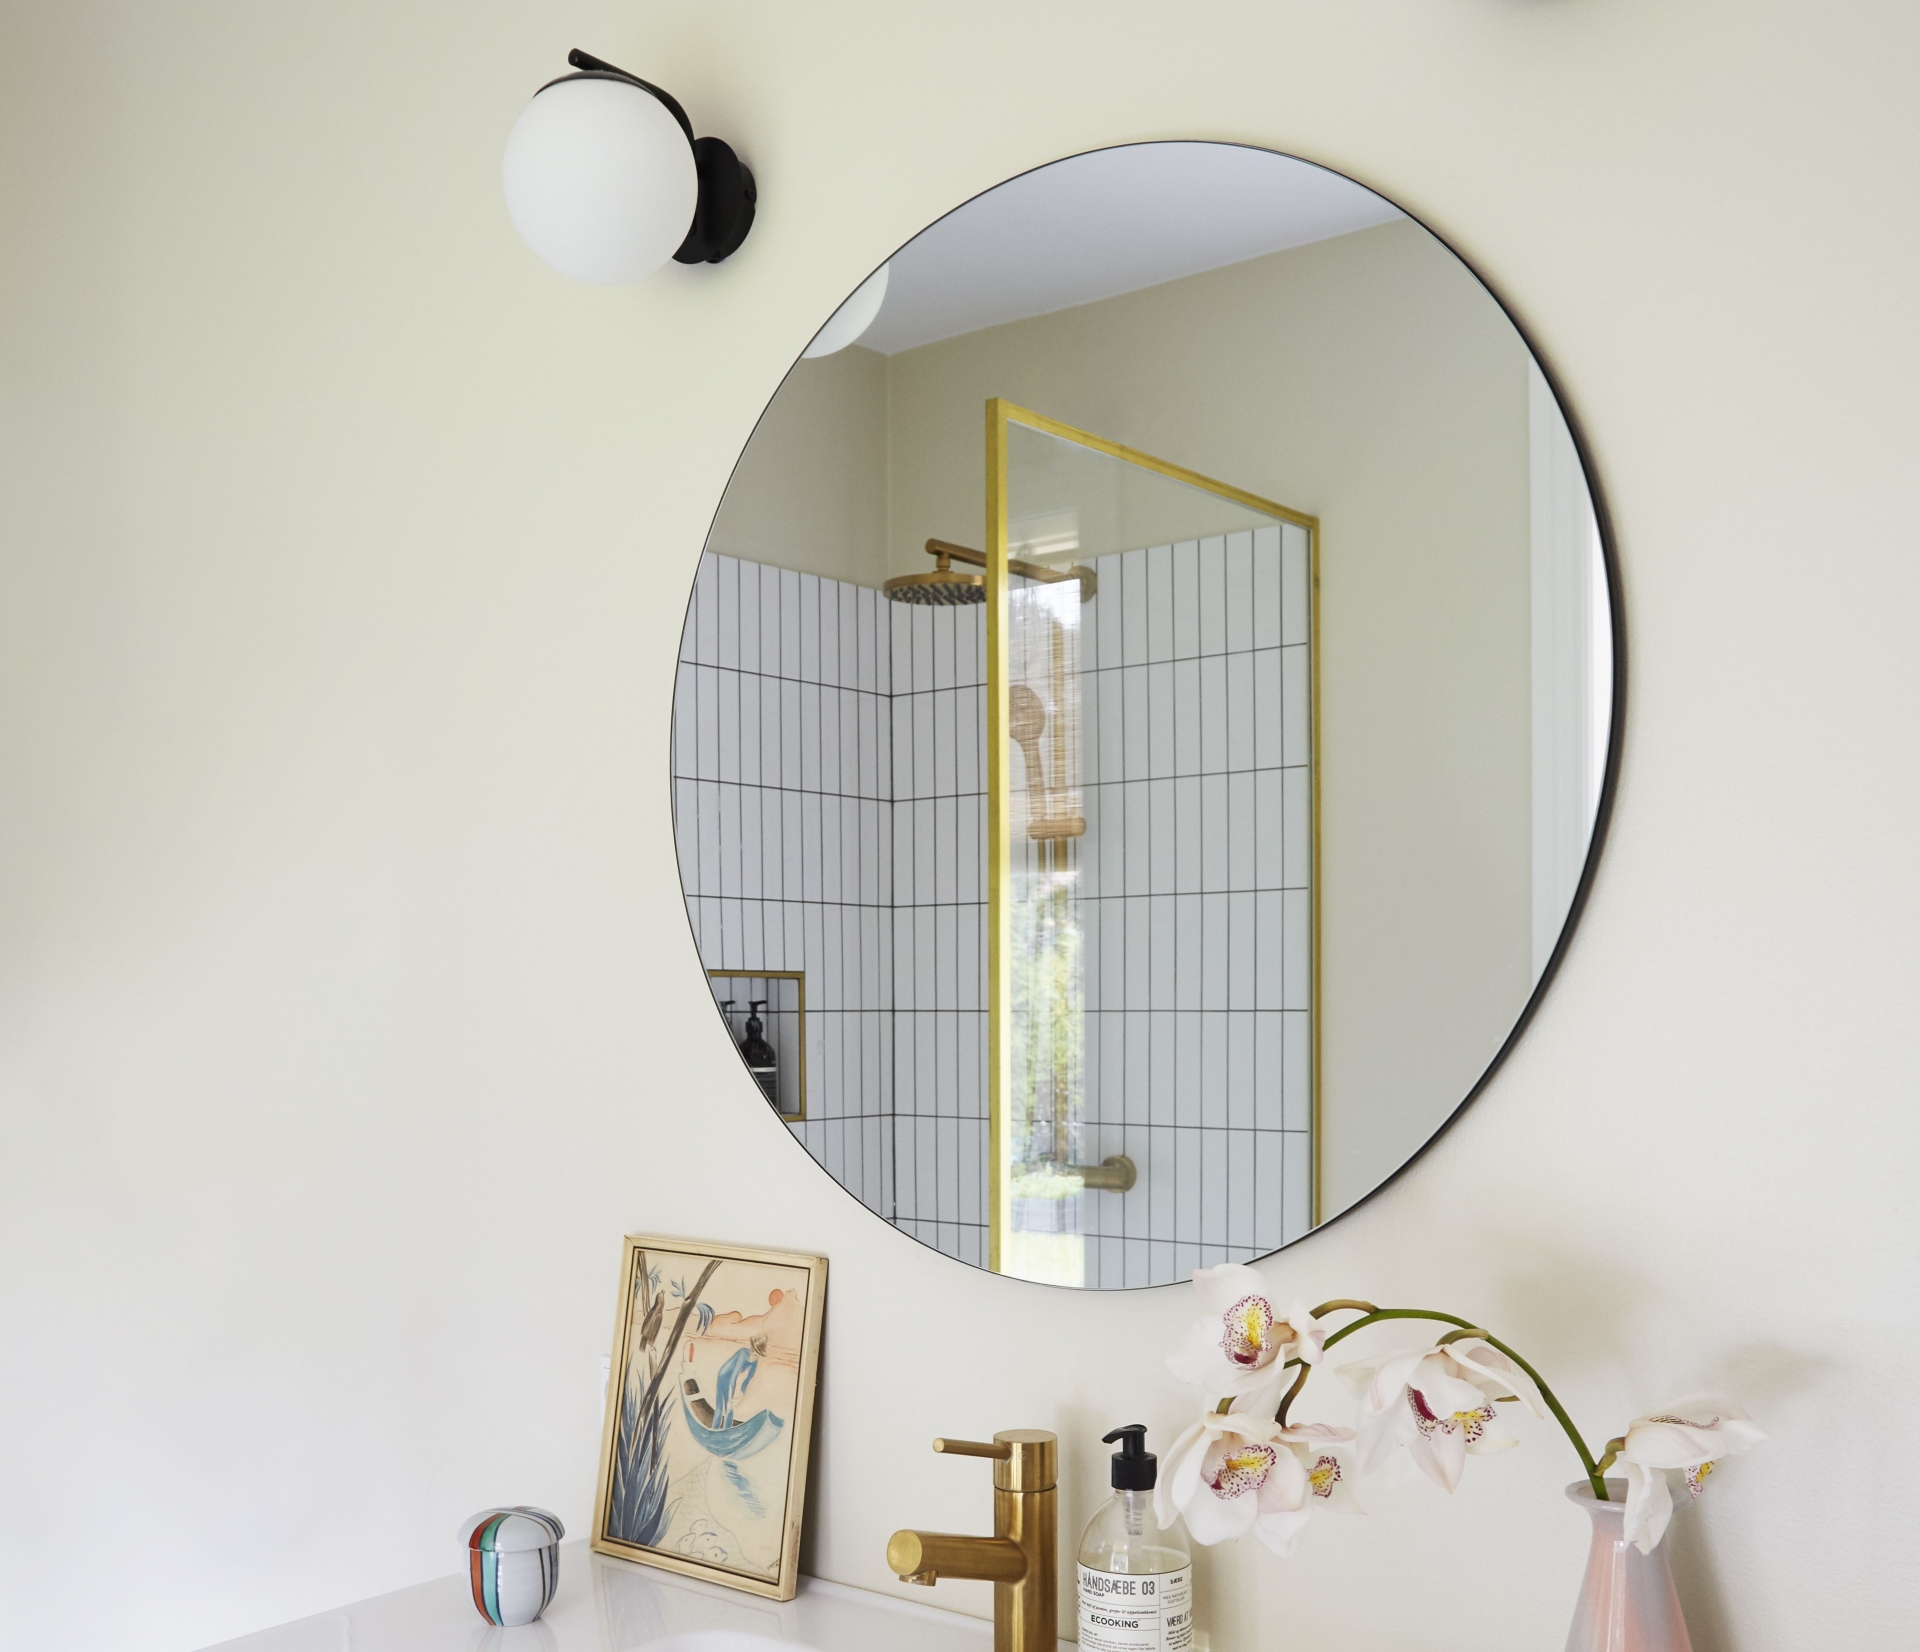 Tấm gương tròn trên bồn rửa cũng góp phần phản chiếu ánh sáng từ ô cửa cho không gian bừng thêm sức sống. 